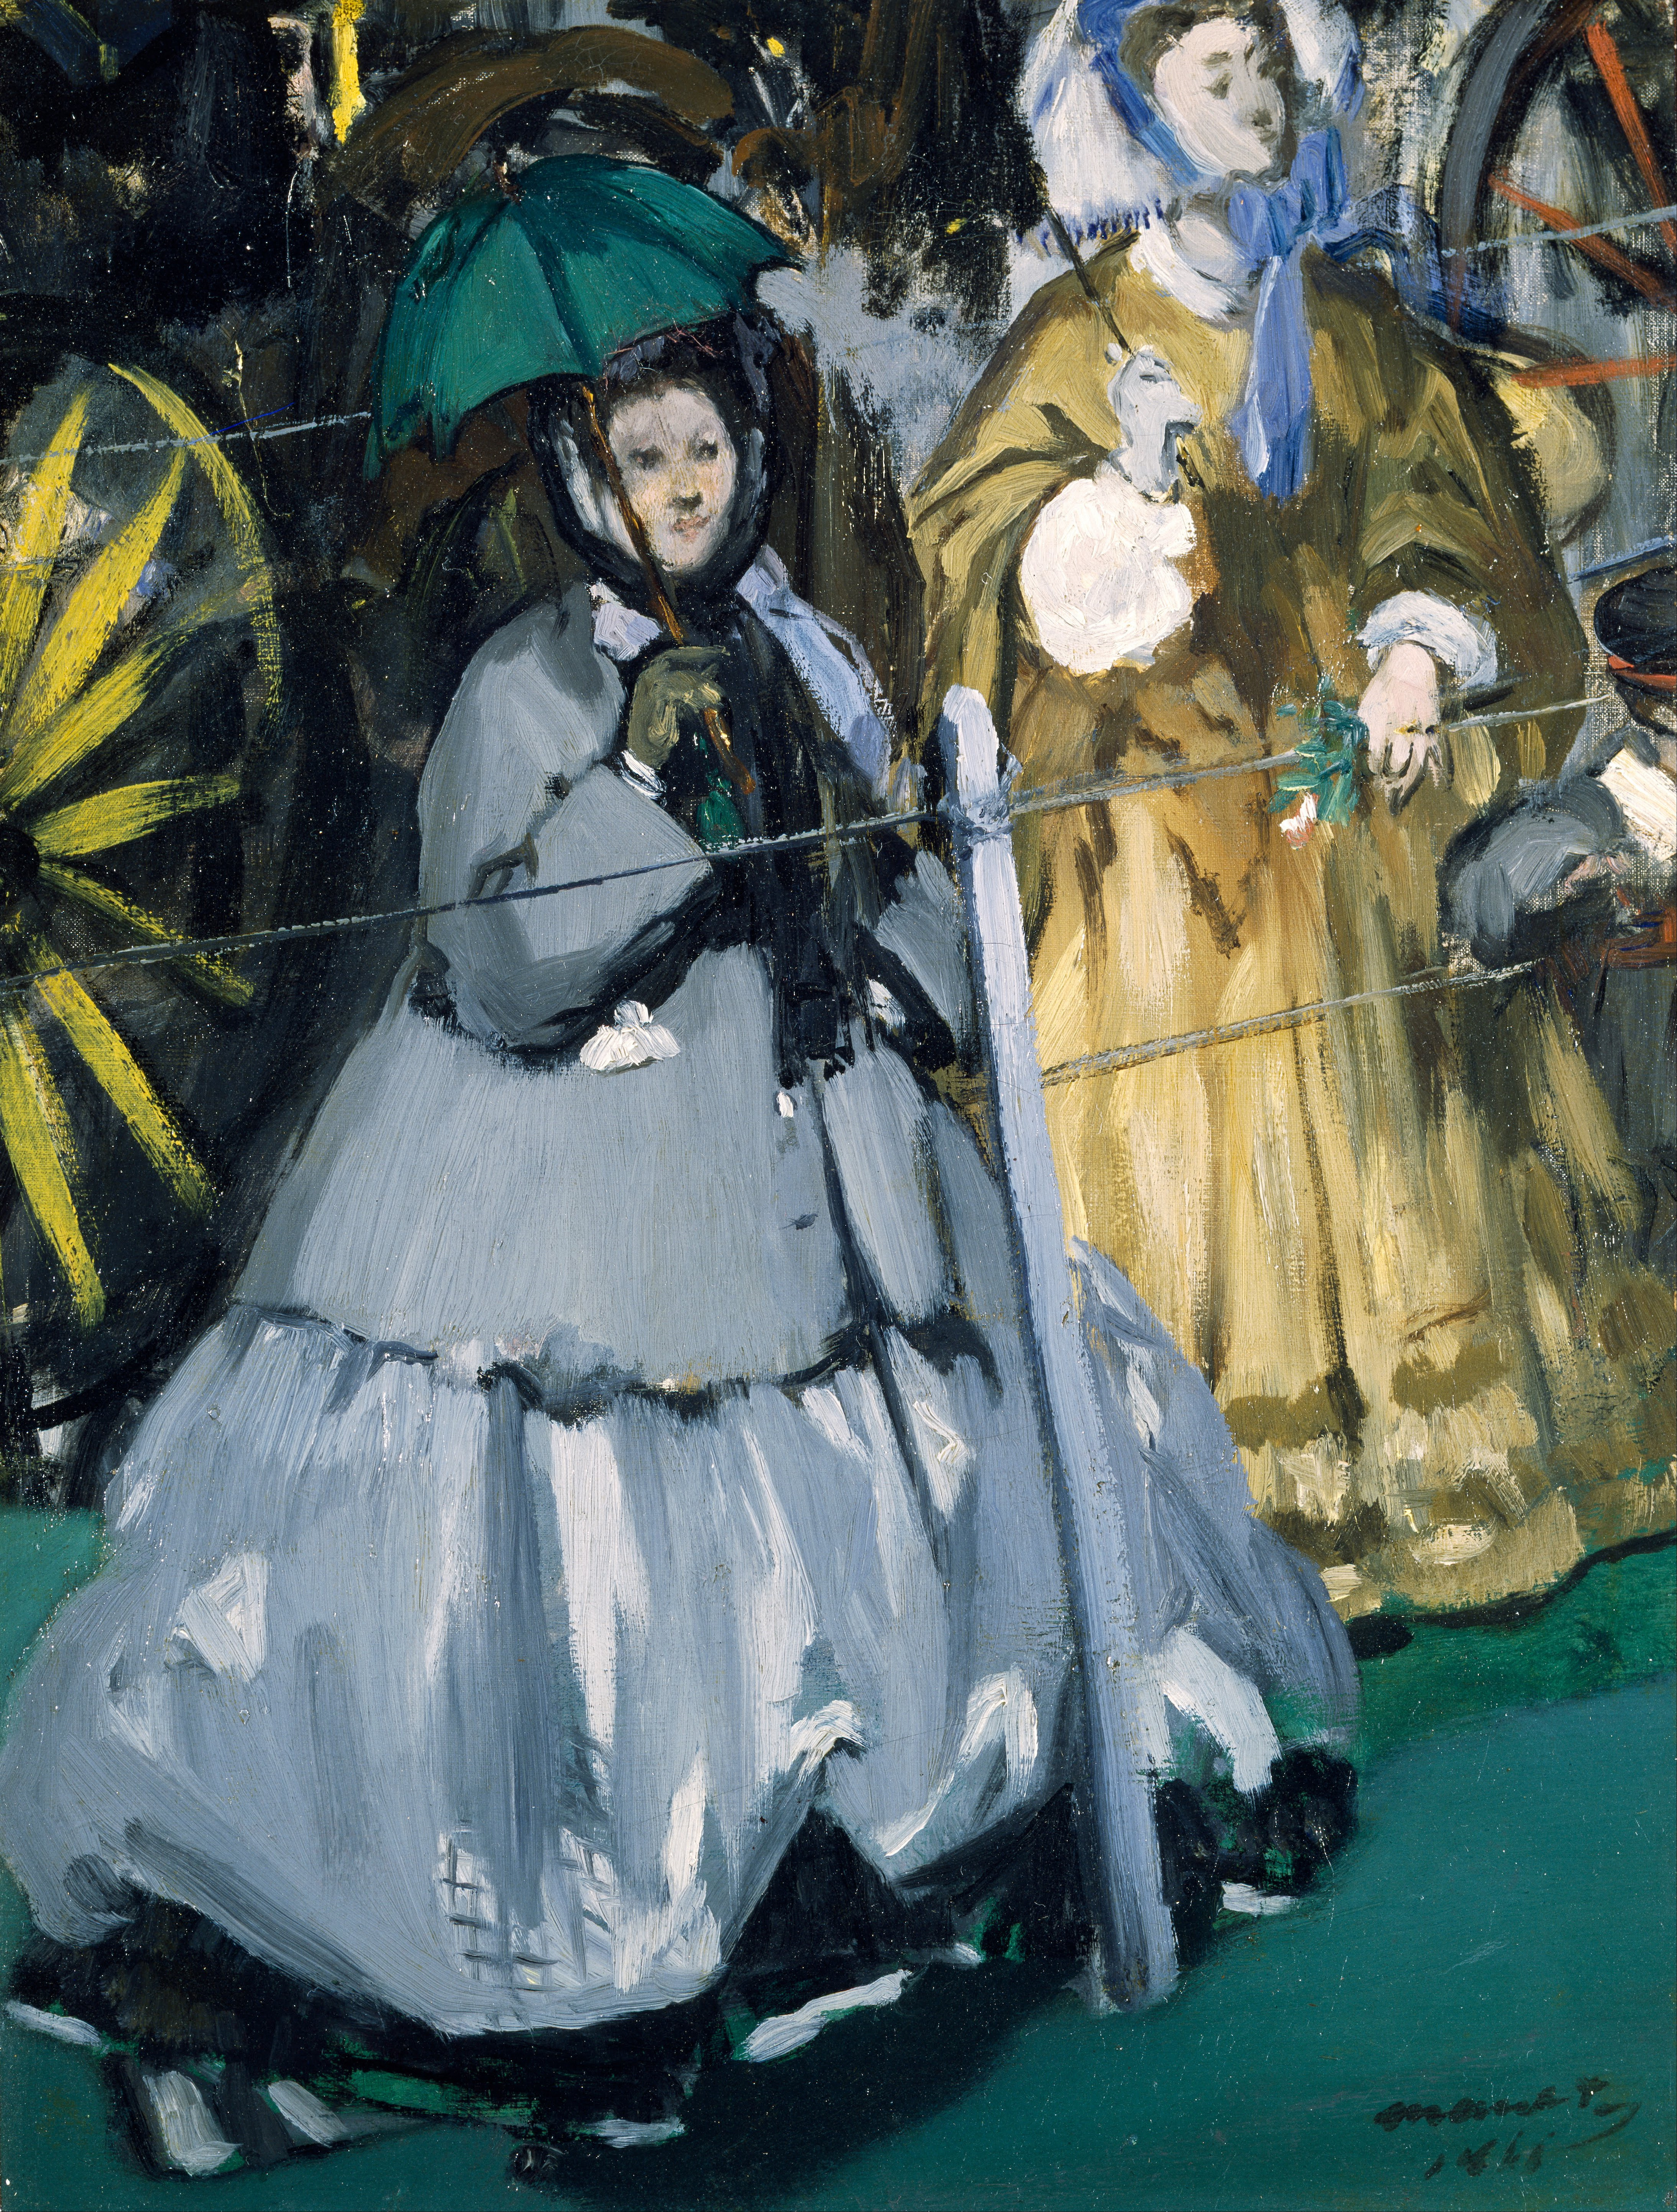 Les femmes aux courses by Édouard Manet - 1866 Cincinnati Art Museum